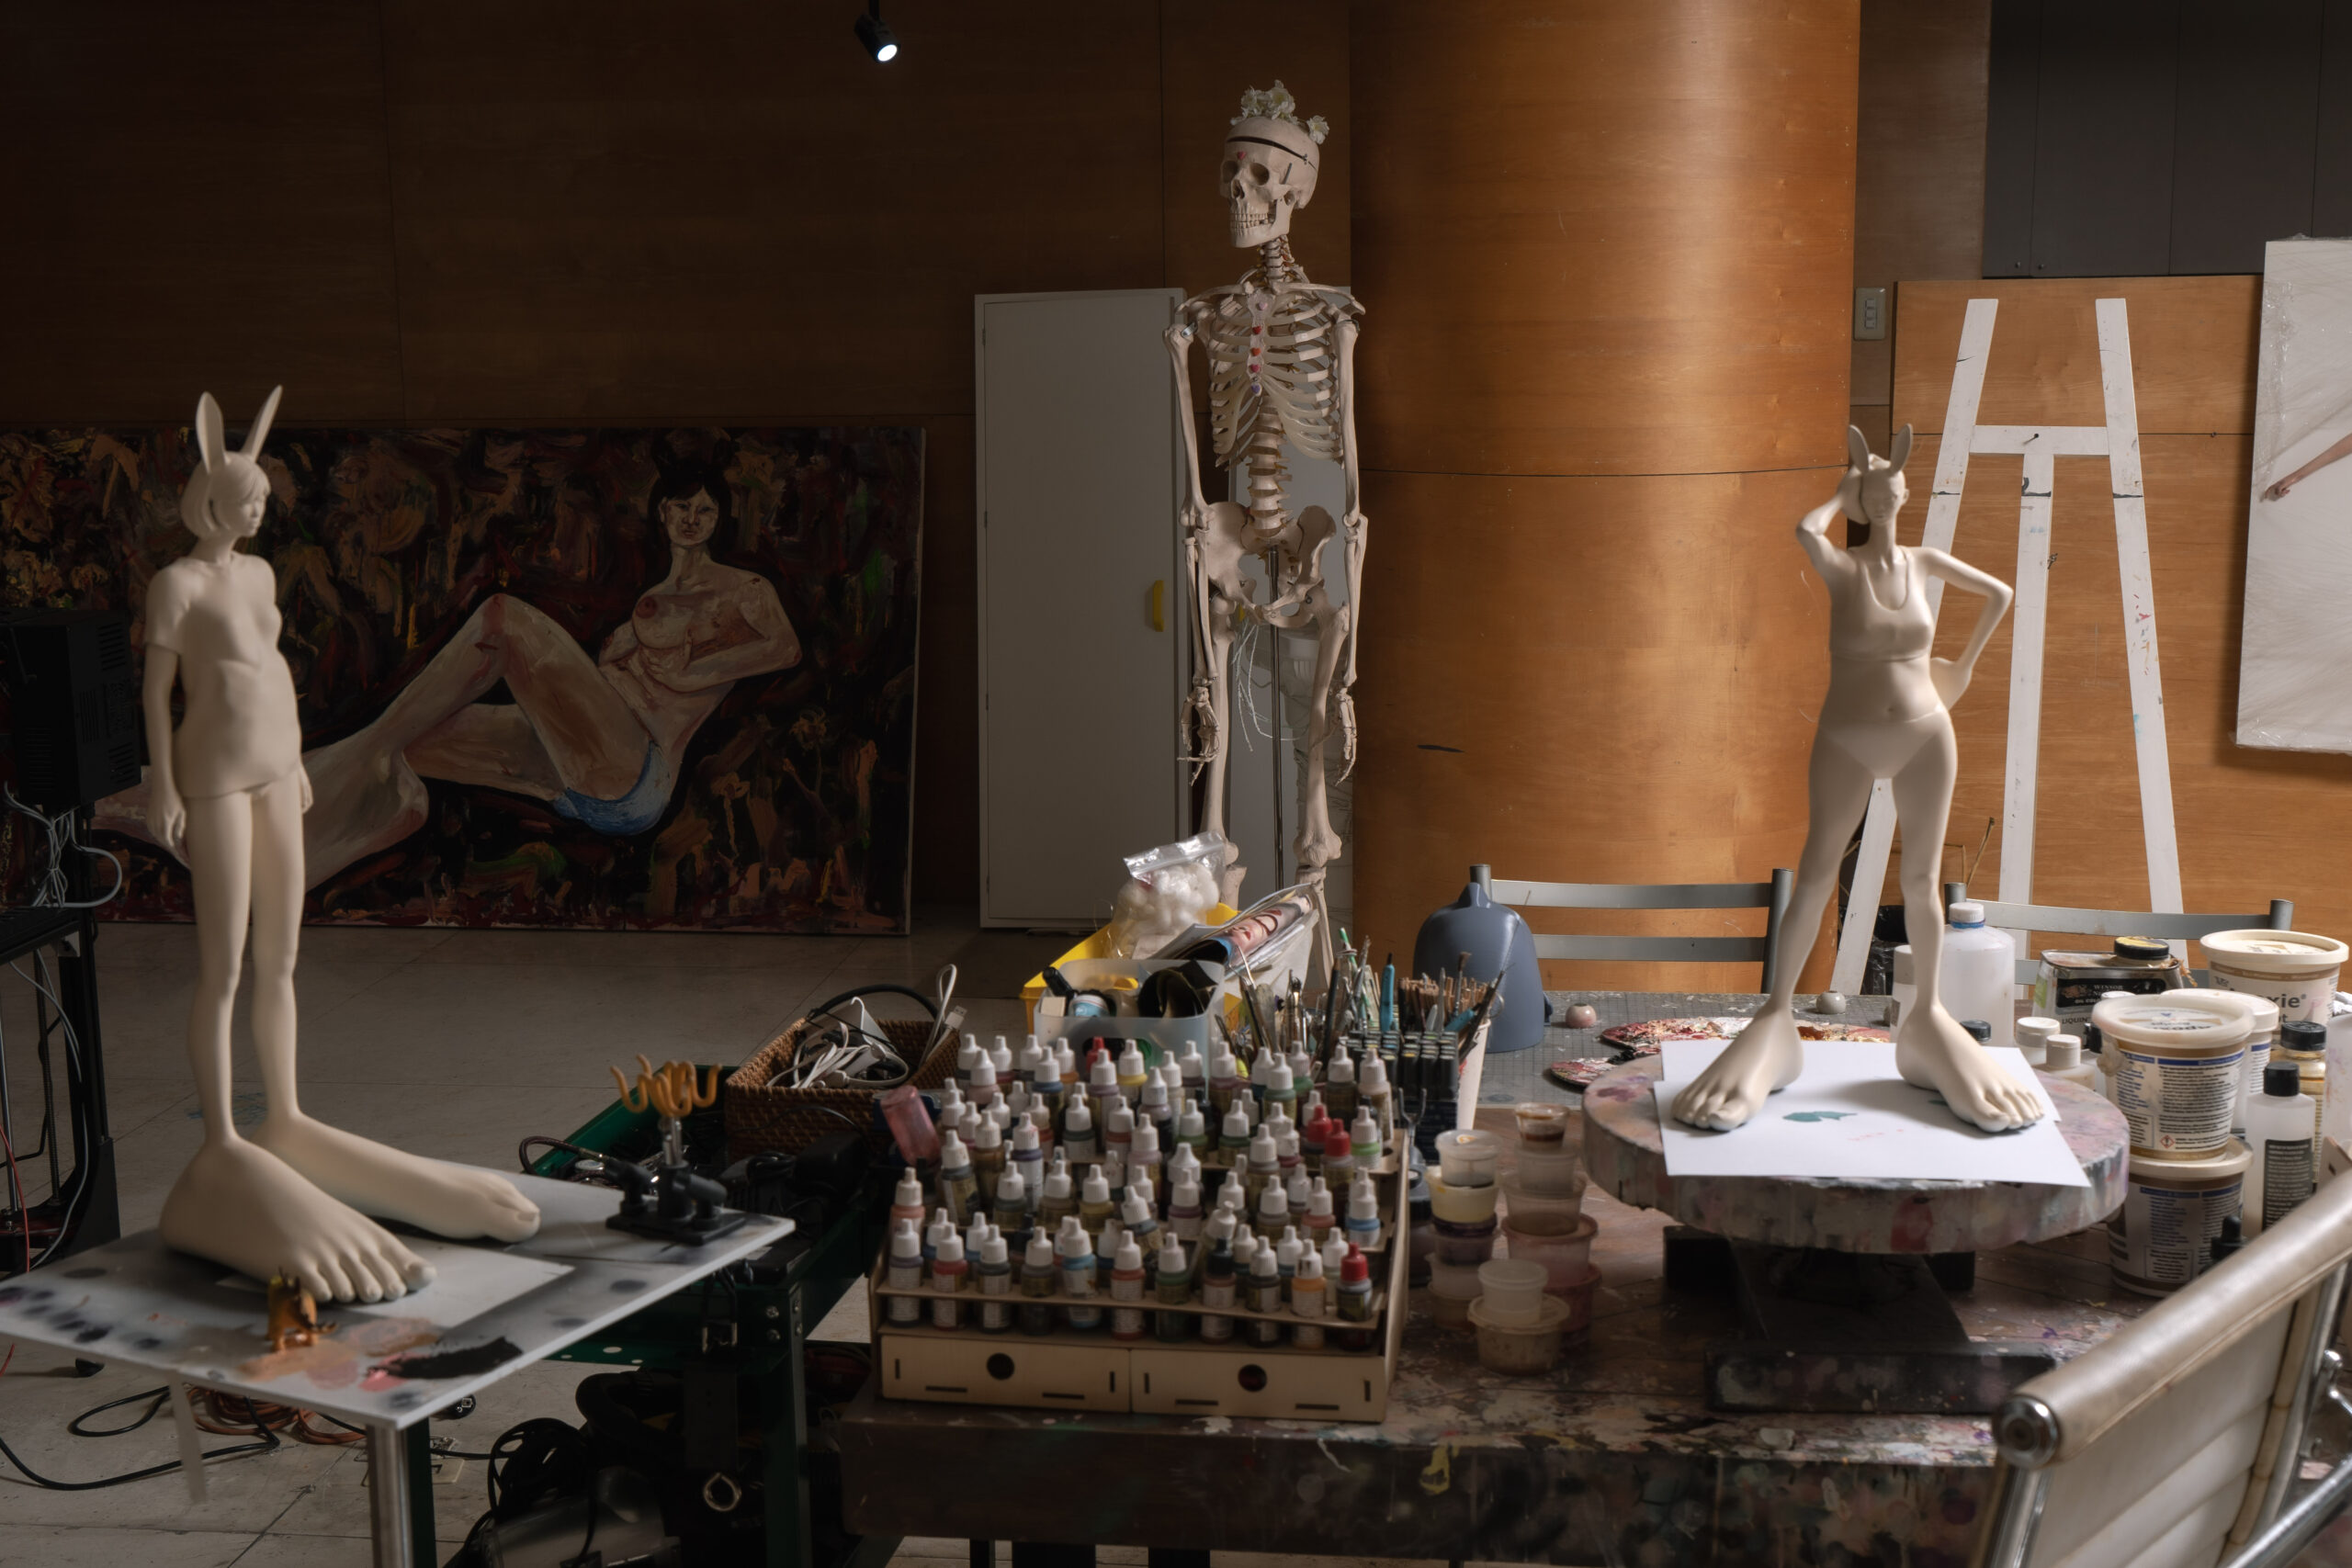 Skeleton with sculptures in art studio